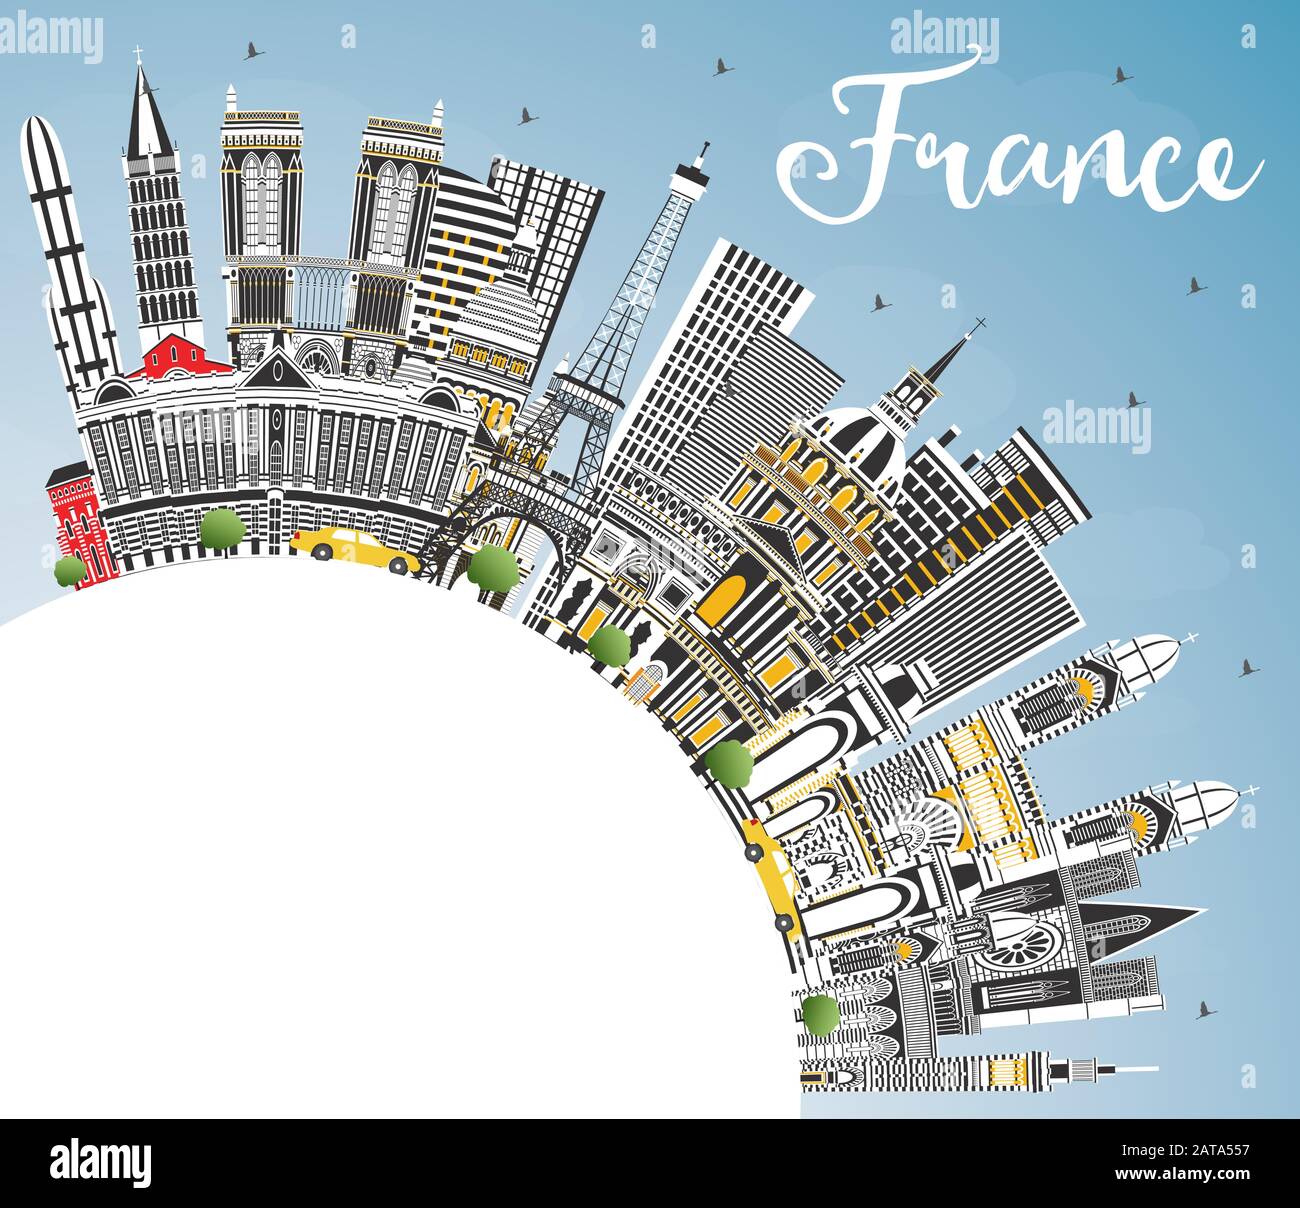 Bienvenue En France Skyline Avec Gray Buildings, Blue Sky Et Copy Space. Illustration Vectorielle. Concept De Tourisme Avec Architecture Historique. Illustration de Vecteur